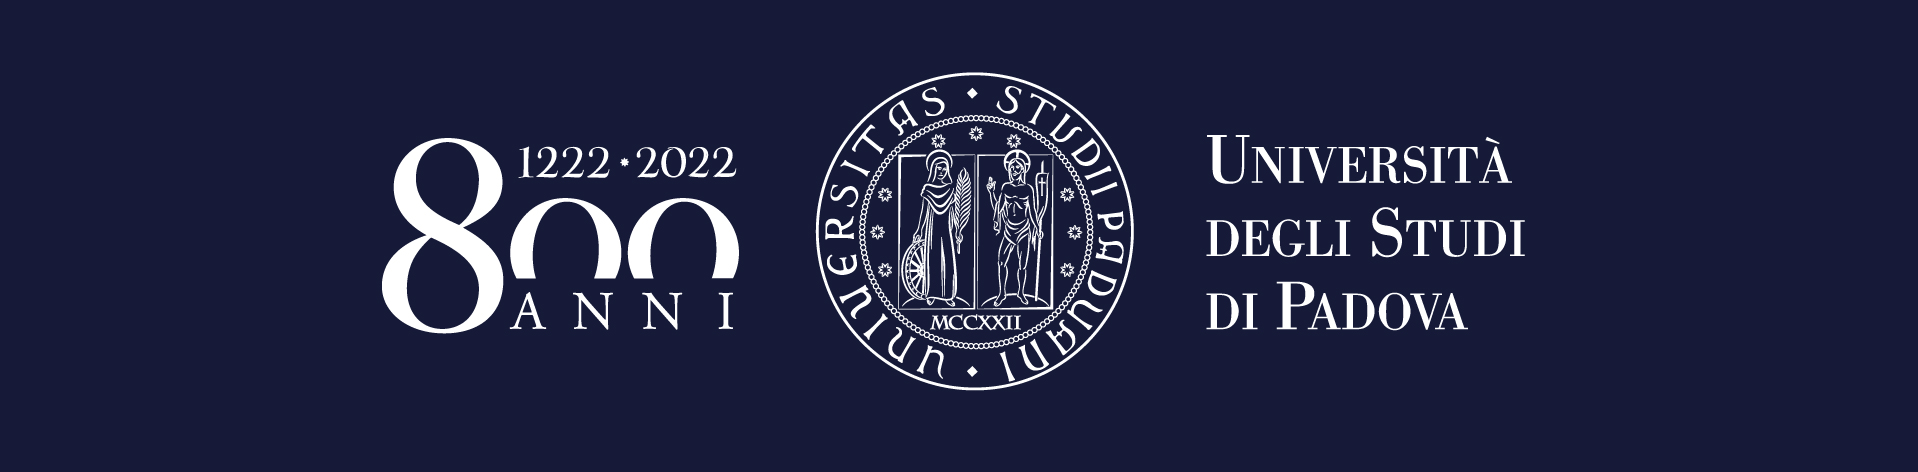 800 anni - Università degli Studi di Padova